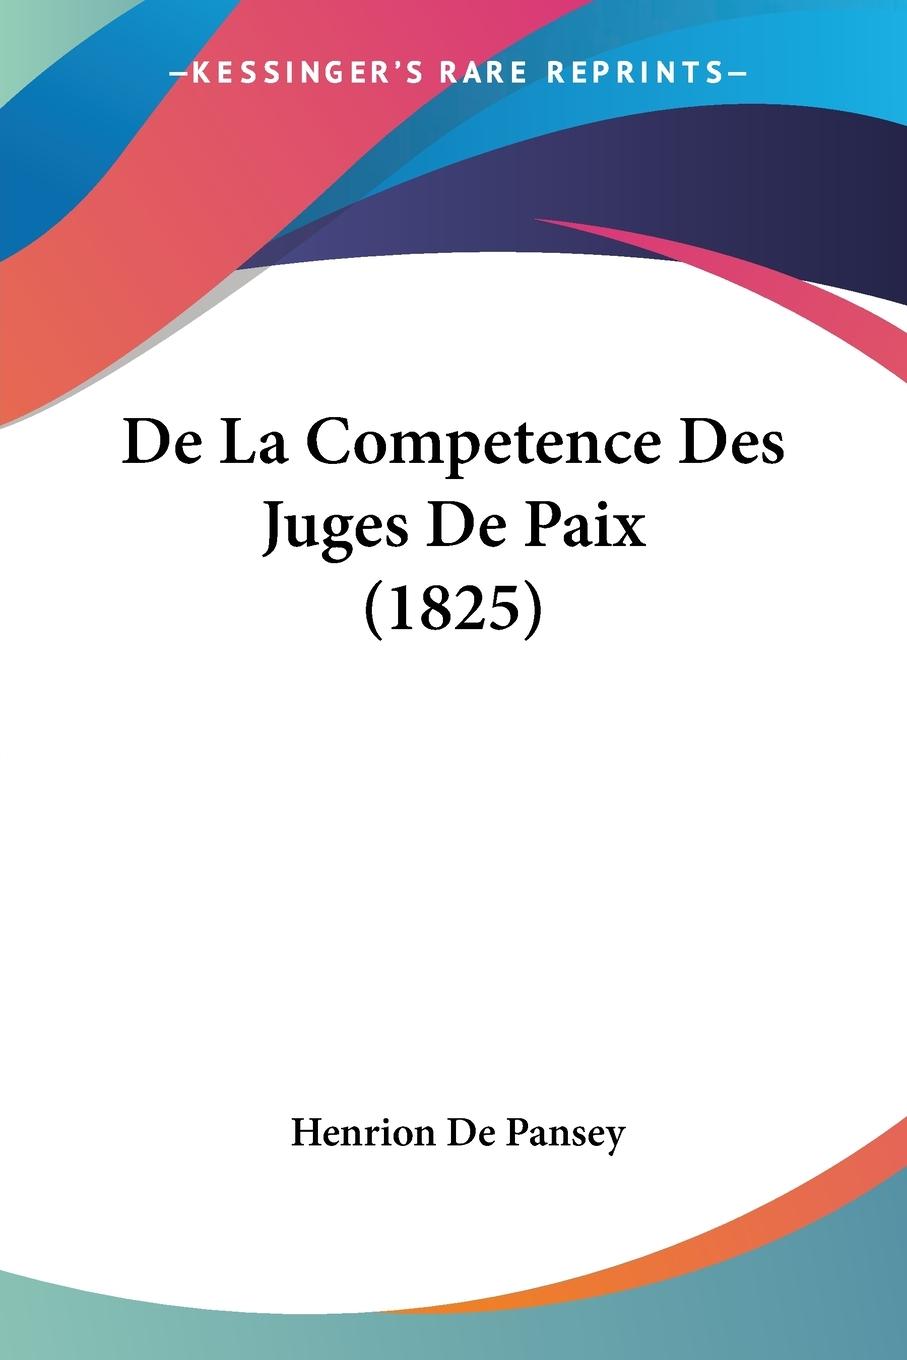 De La Competence Des Juges De Paix (1825) - De Pansey, Henrion